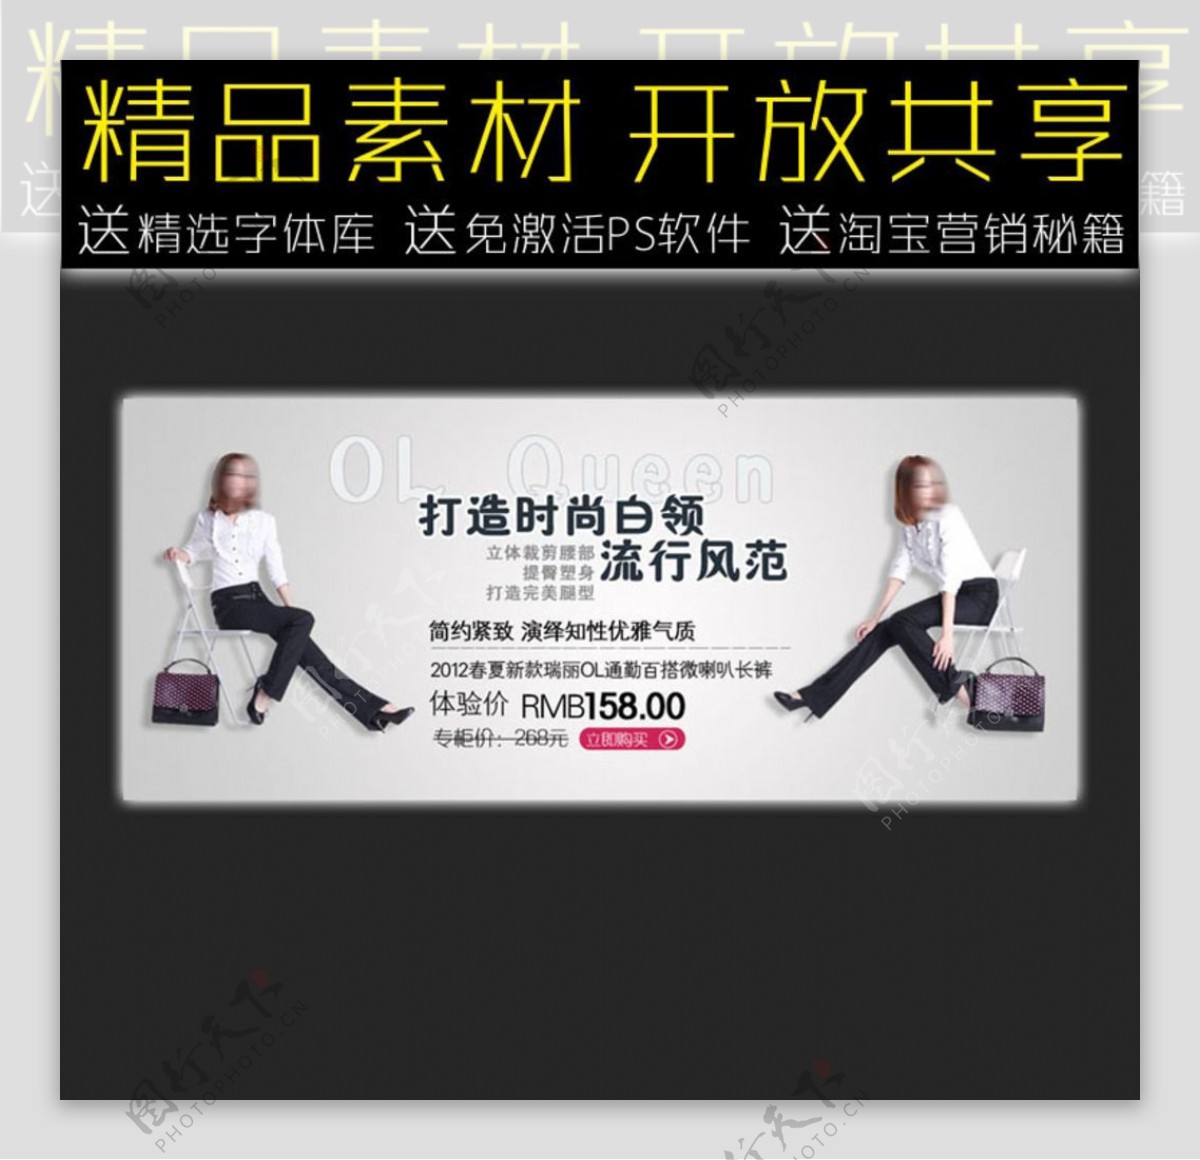 女裤网店促销广告模板图片